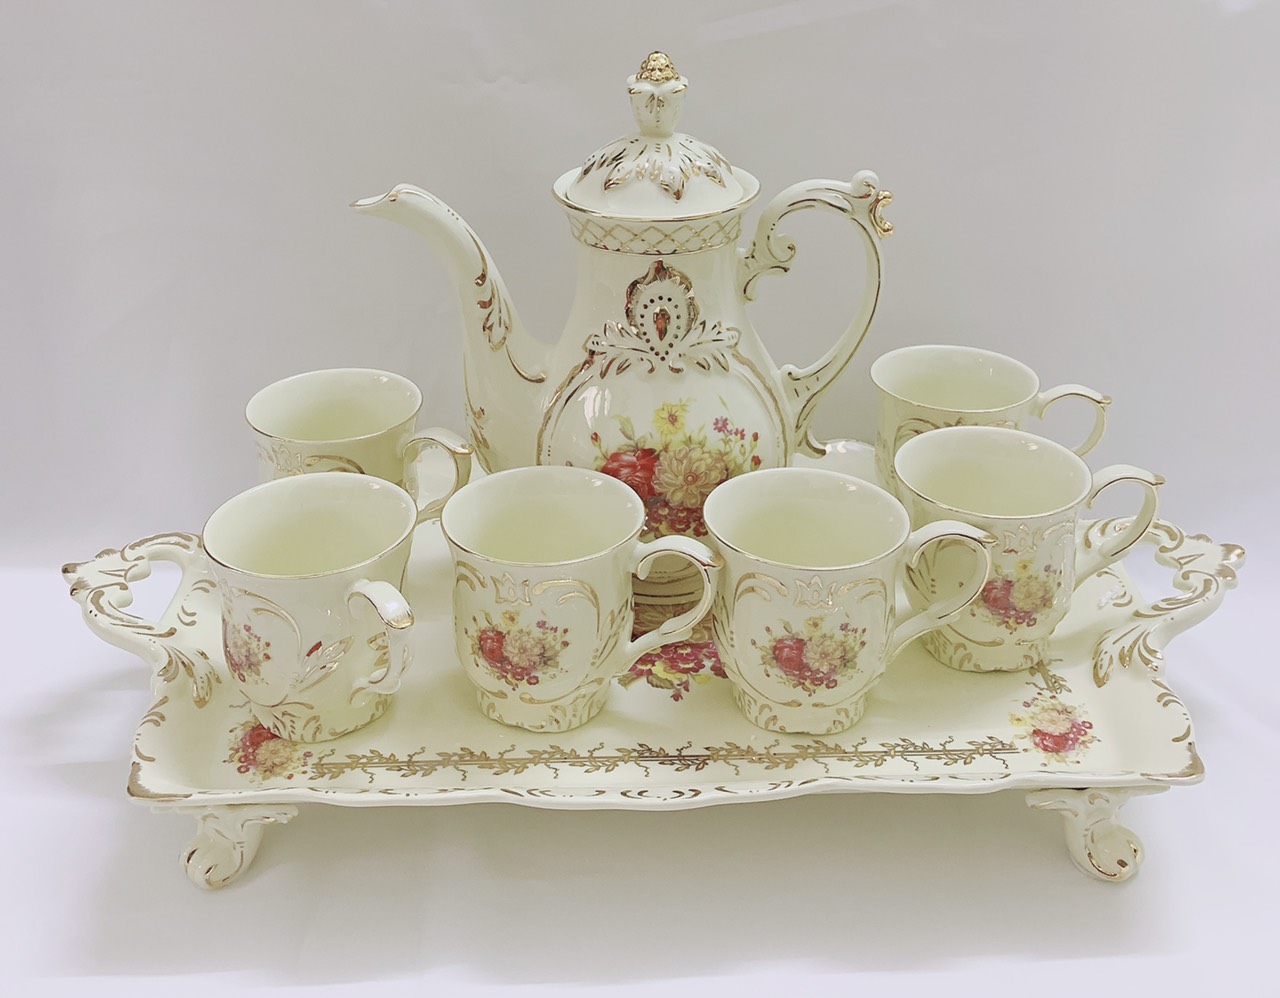 Bộ bình trà sứ phong cách hoàng gia cổ điển màu trắng ngà họa tiết hoa Mẫu Đơn